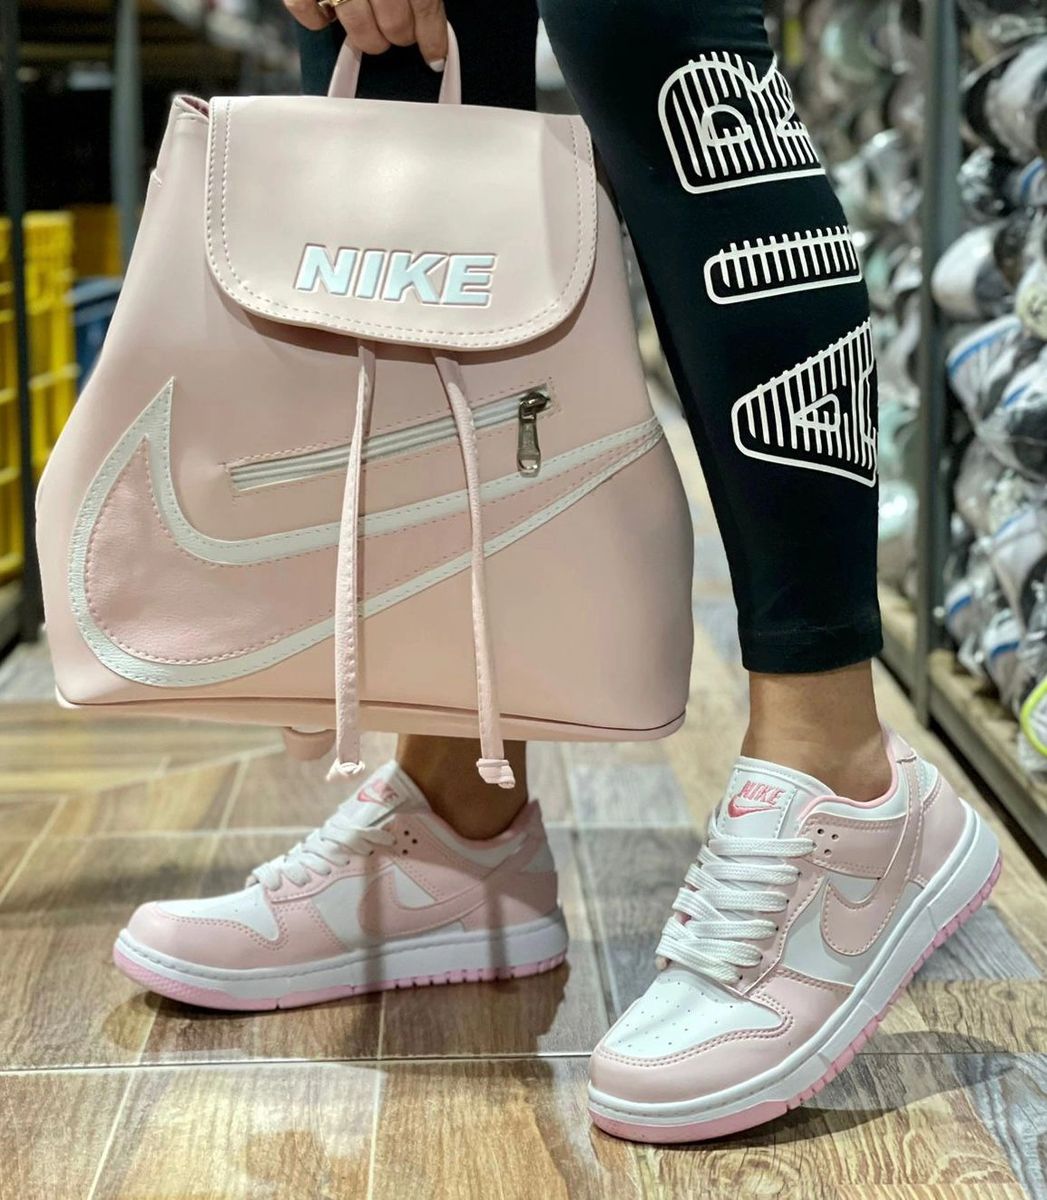 SB Handbag & Shoe Set (Size: 6, Color: Pink)